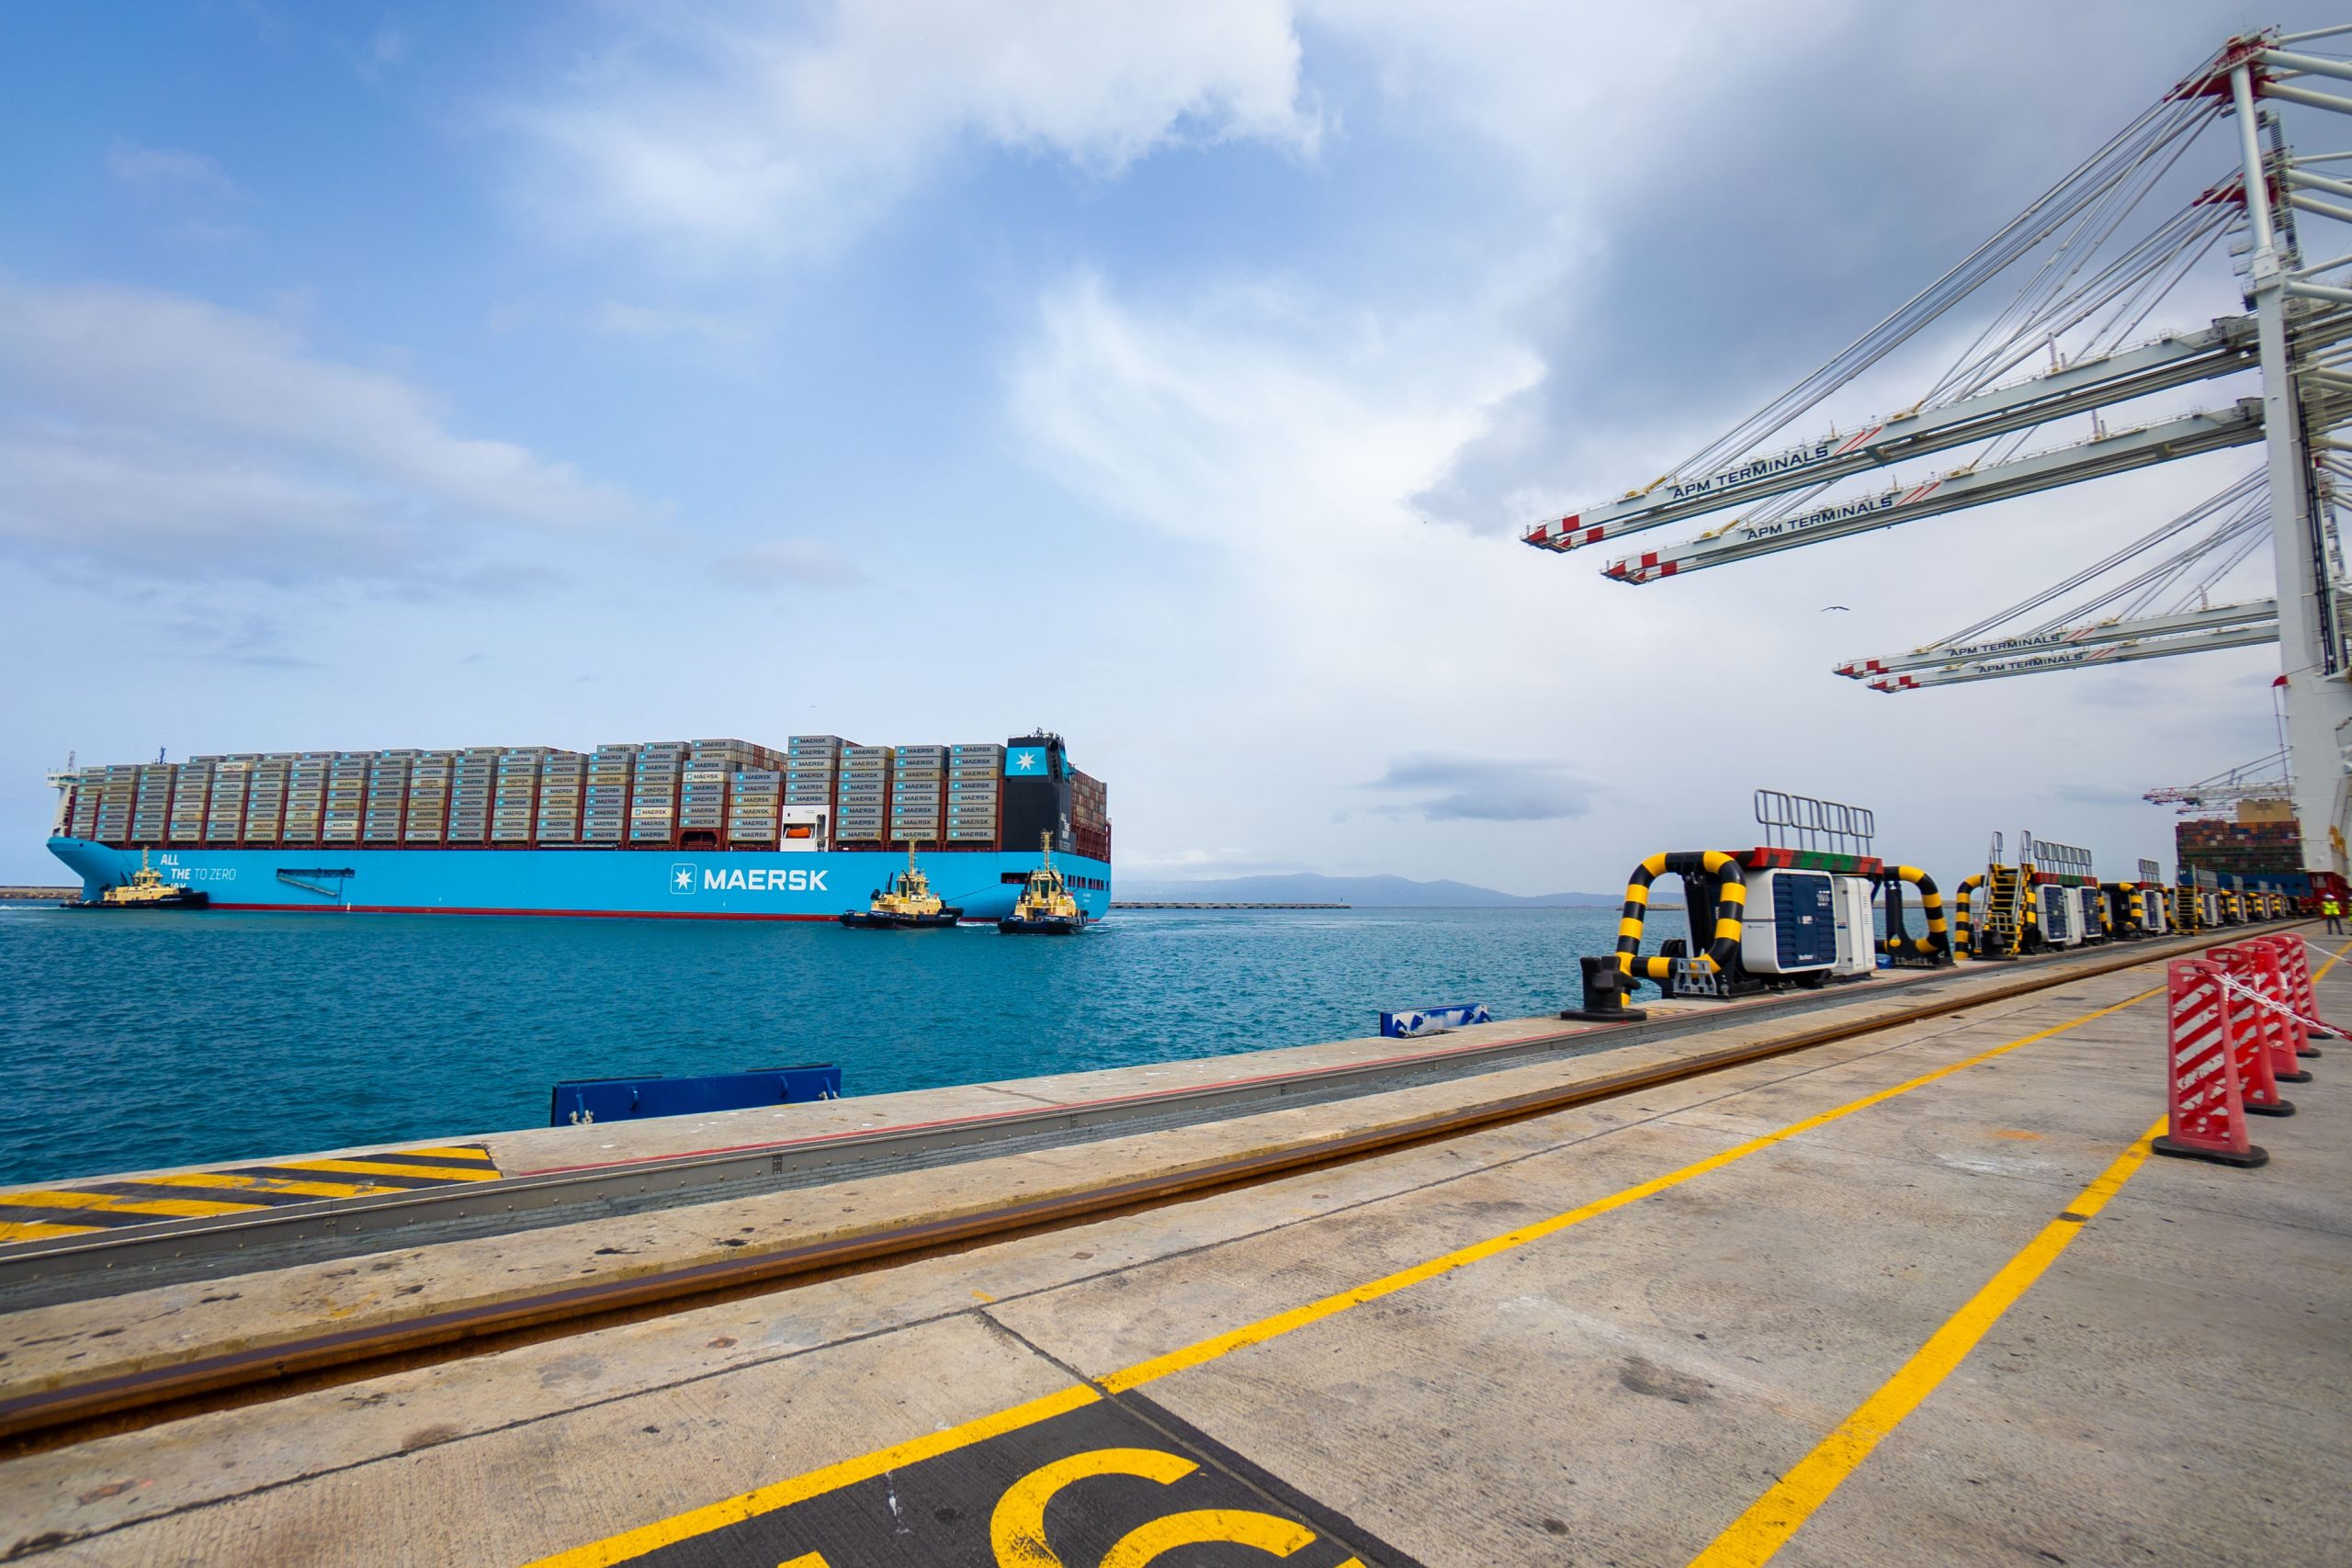 أكبر سفينة حاويات في العالم تعمل بالميثانول الأخضر